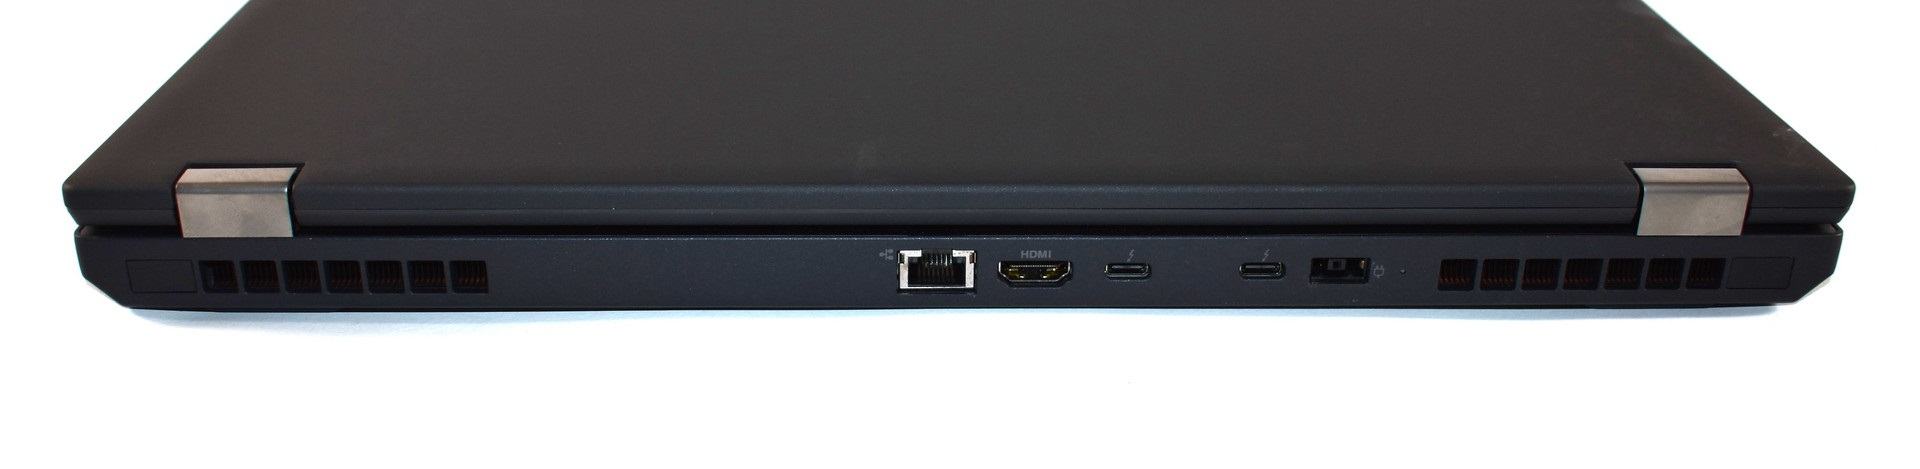 Đánh giá laptop Lenovo Thinkpad P52: Máy trạm mạnh mẽ, bền bỉ